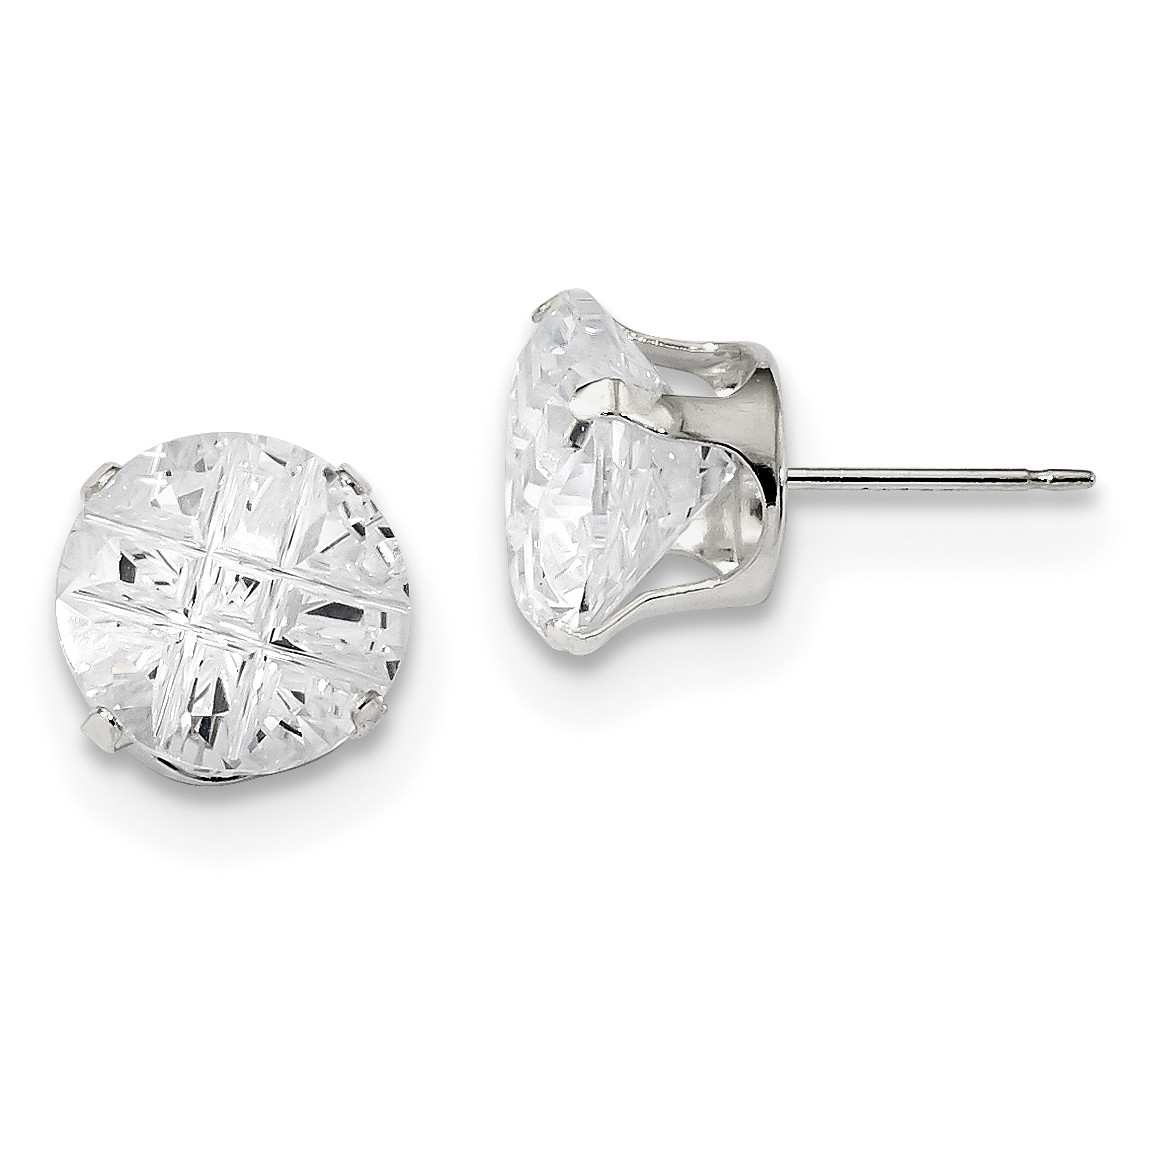 キナリ・ベージュ Sterling Silver Cubic Zirconia Earrings Studs 10 mm prong  carat/pa